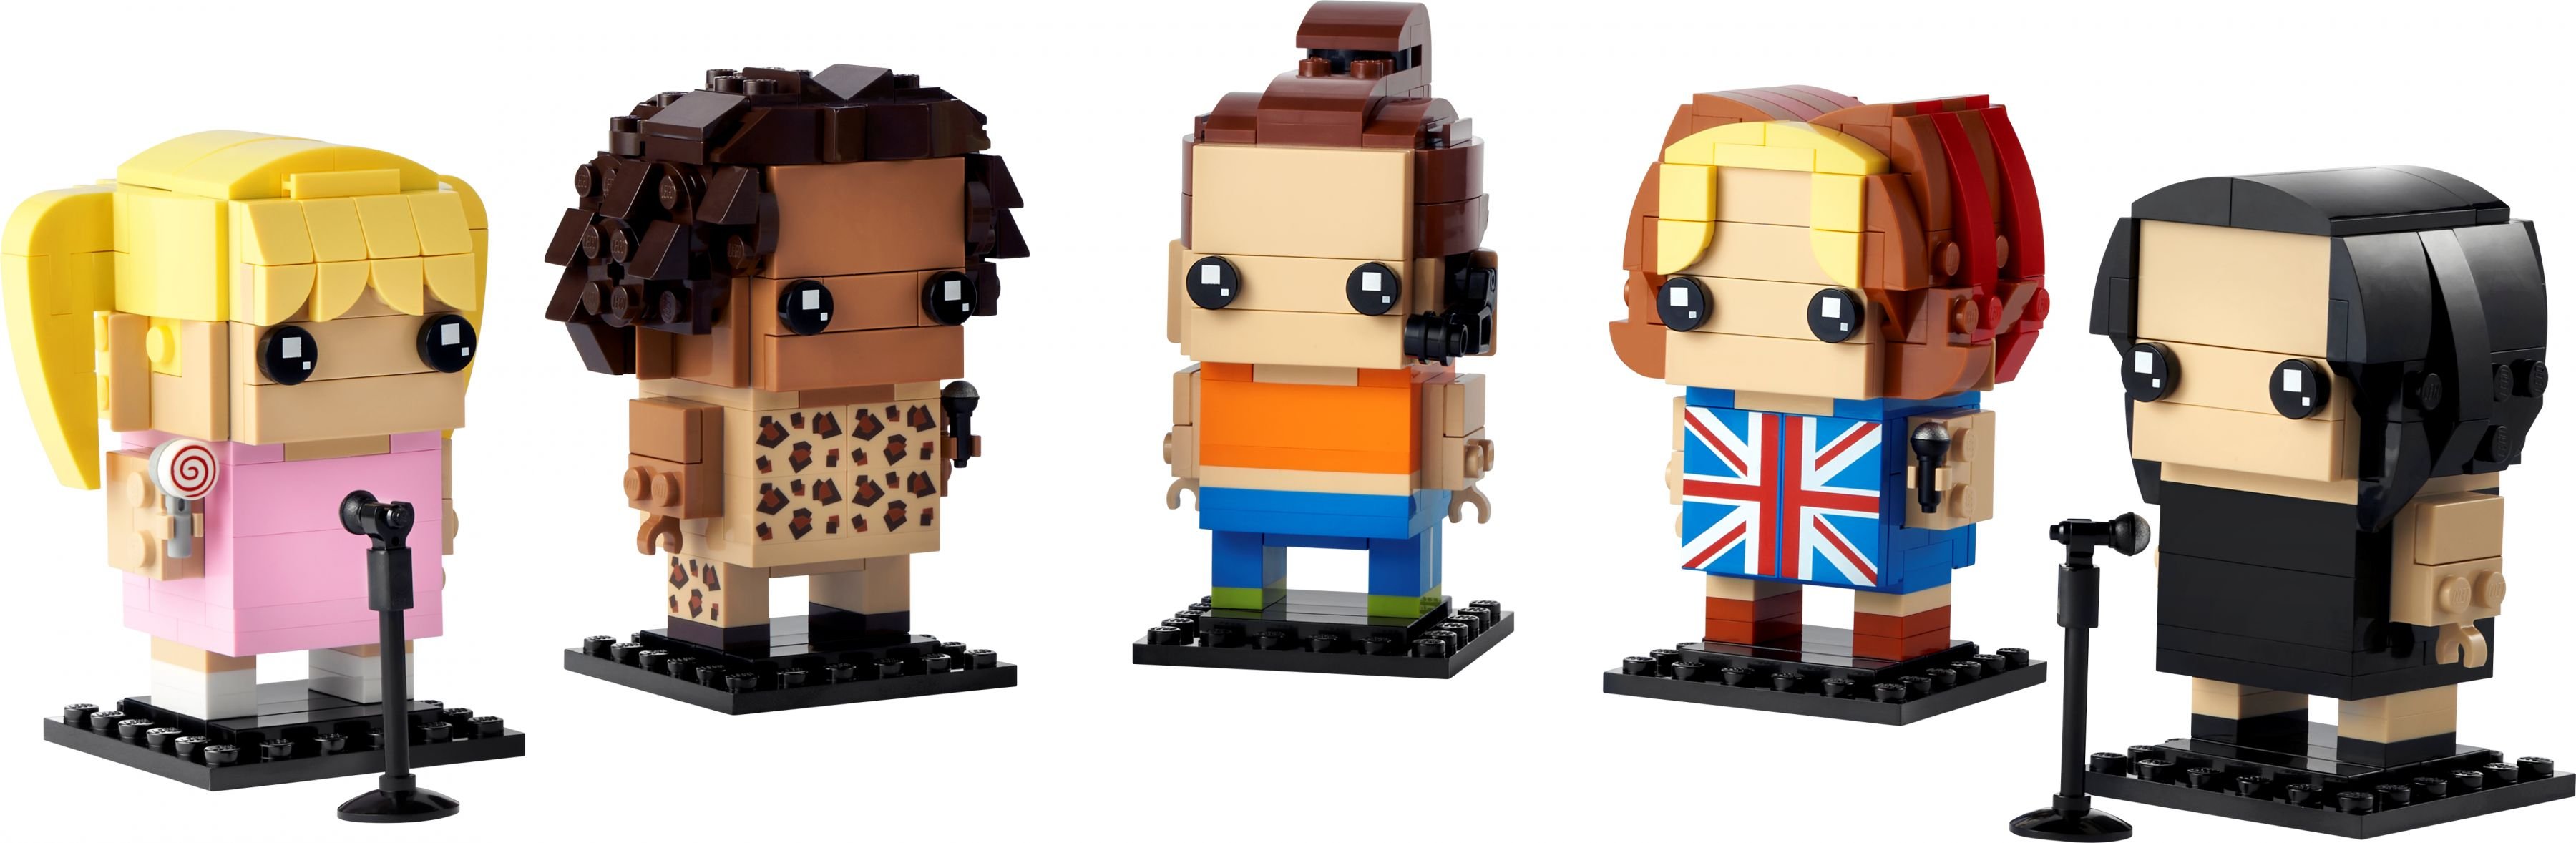 LEGO BrickHeadz 40548 Hommage an die Spice Girls